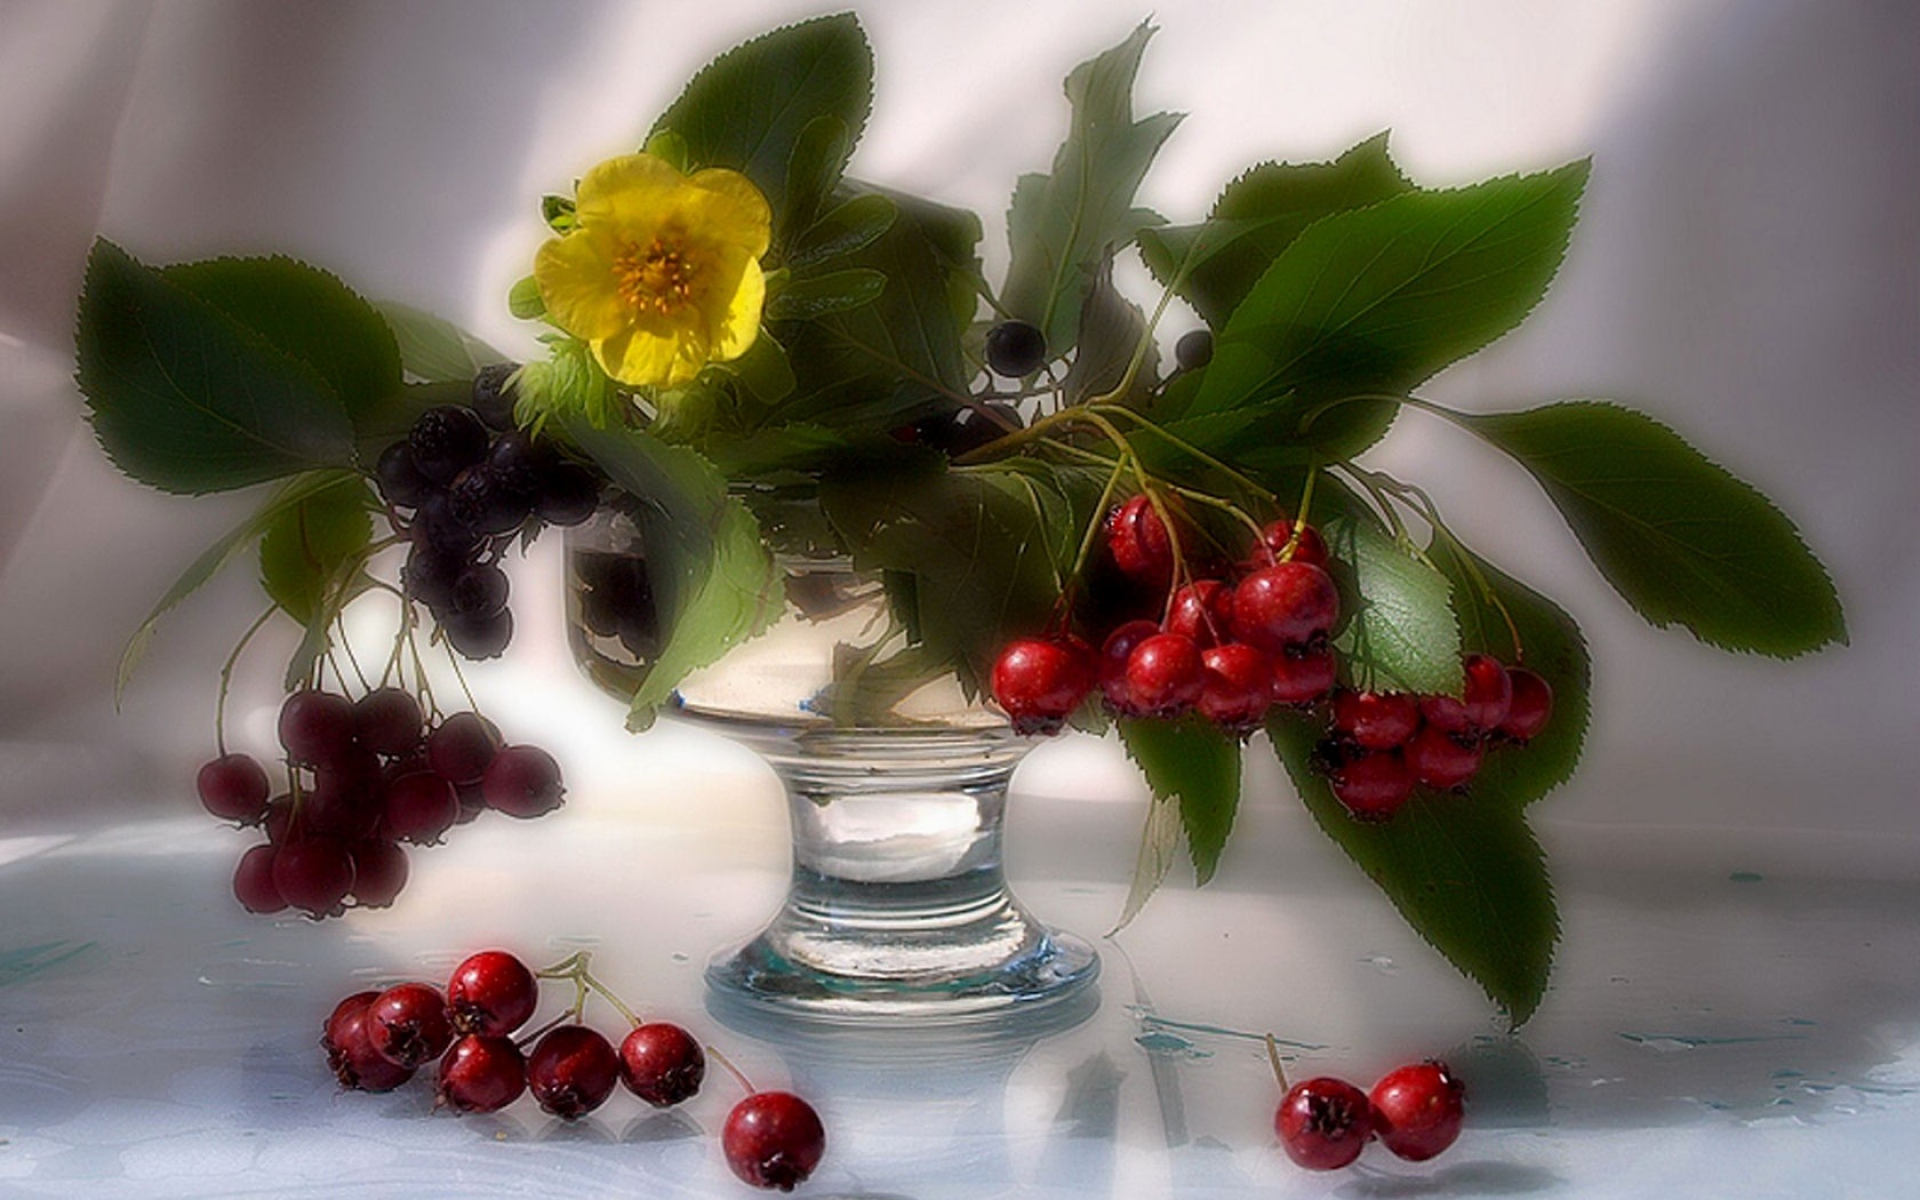 Картинки Цветы, веточки, ягоды, рябина, травы, пиала фото и обои на рабочий стол